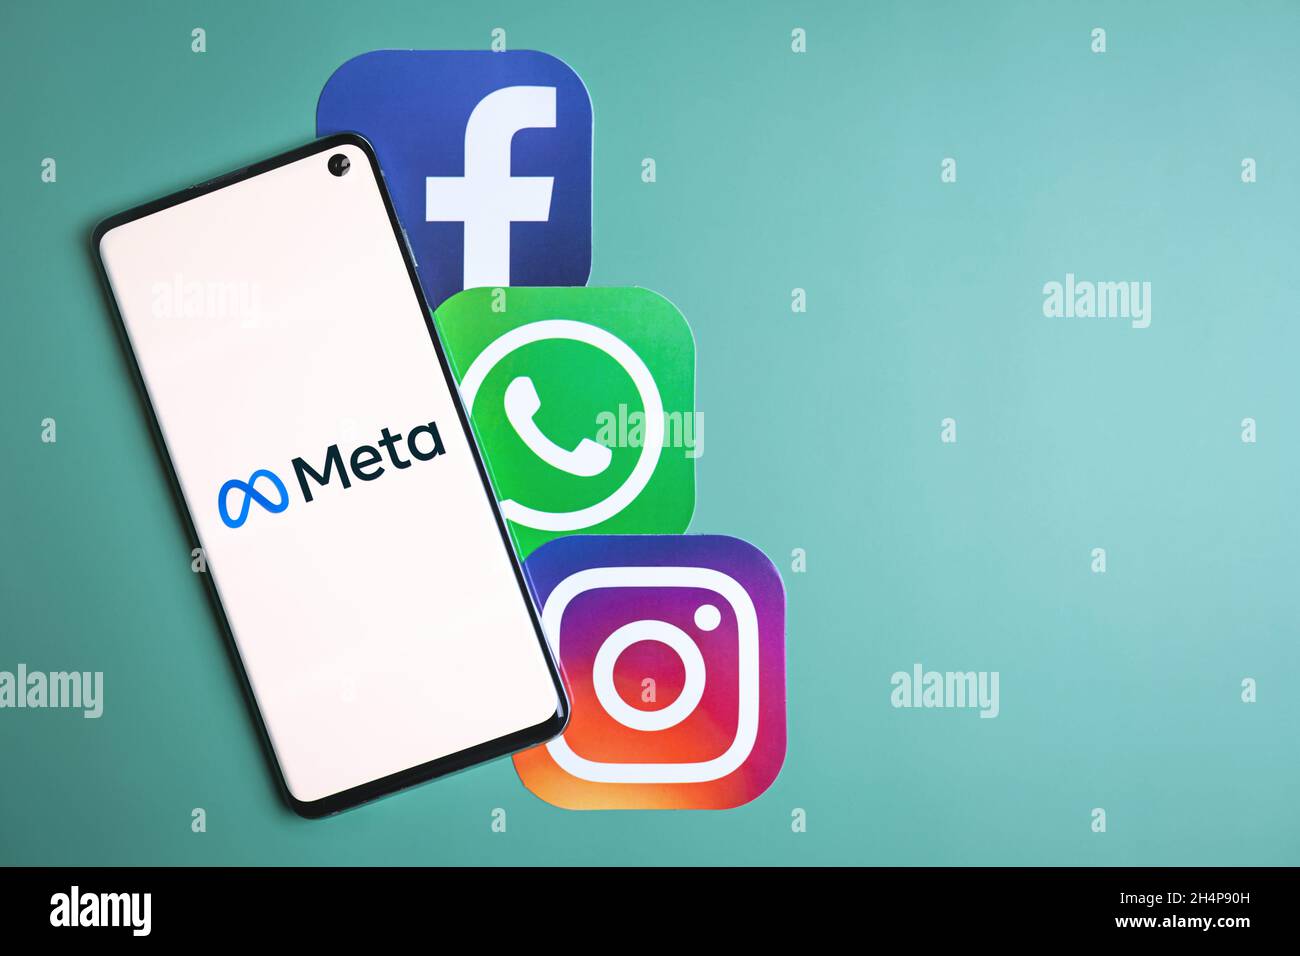 META-Logo auf dem Smartphone-Bildschirm neben Facebook-, Whatsapp- und Instagram-Symbolen. Facebook ändert den Firmennamen in Meta und konzentriert sich bei der Neumarkation auf Metaverse. Swansea, Großbritannien - 2. November 2021. Stockfoto